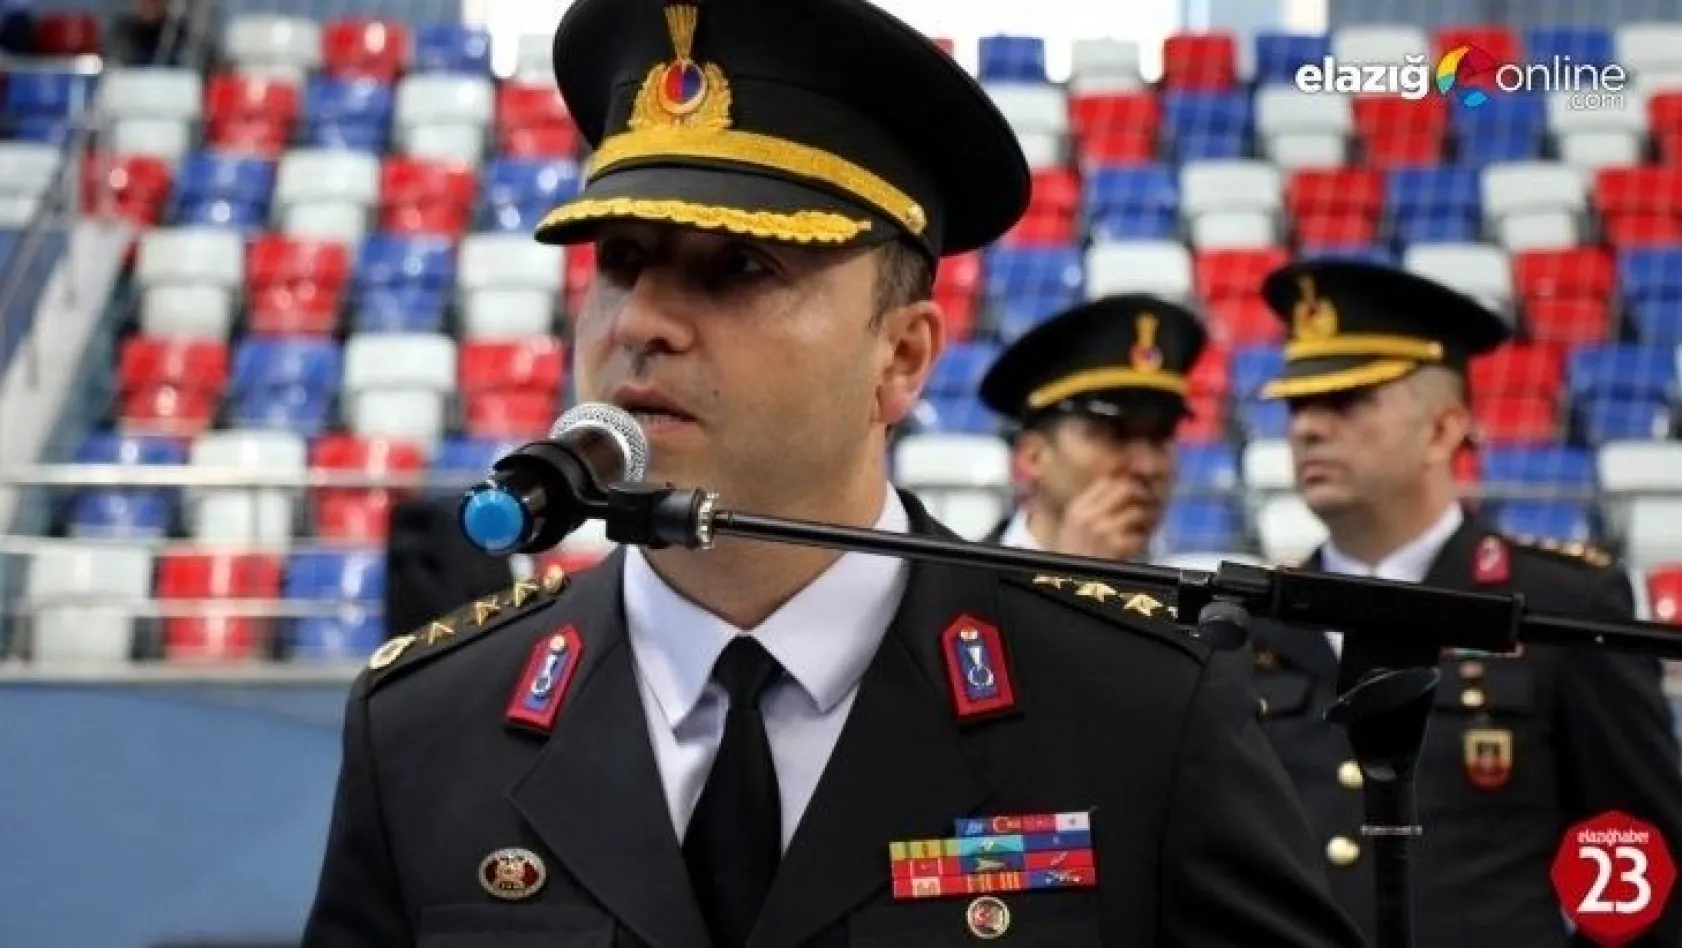 Elazığ İl Jandarma Komutanı İstihbarat Daire Başkanlığına atandı